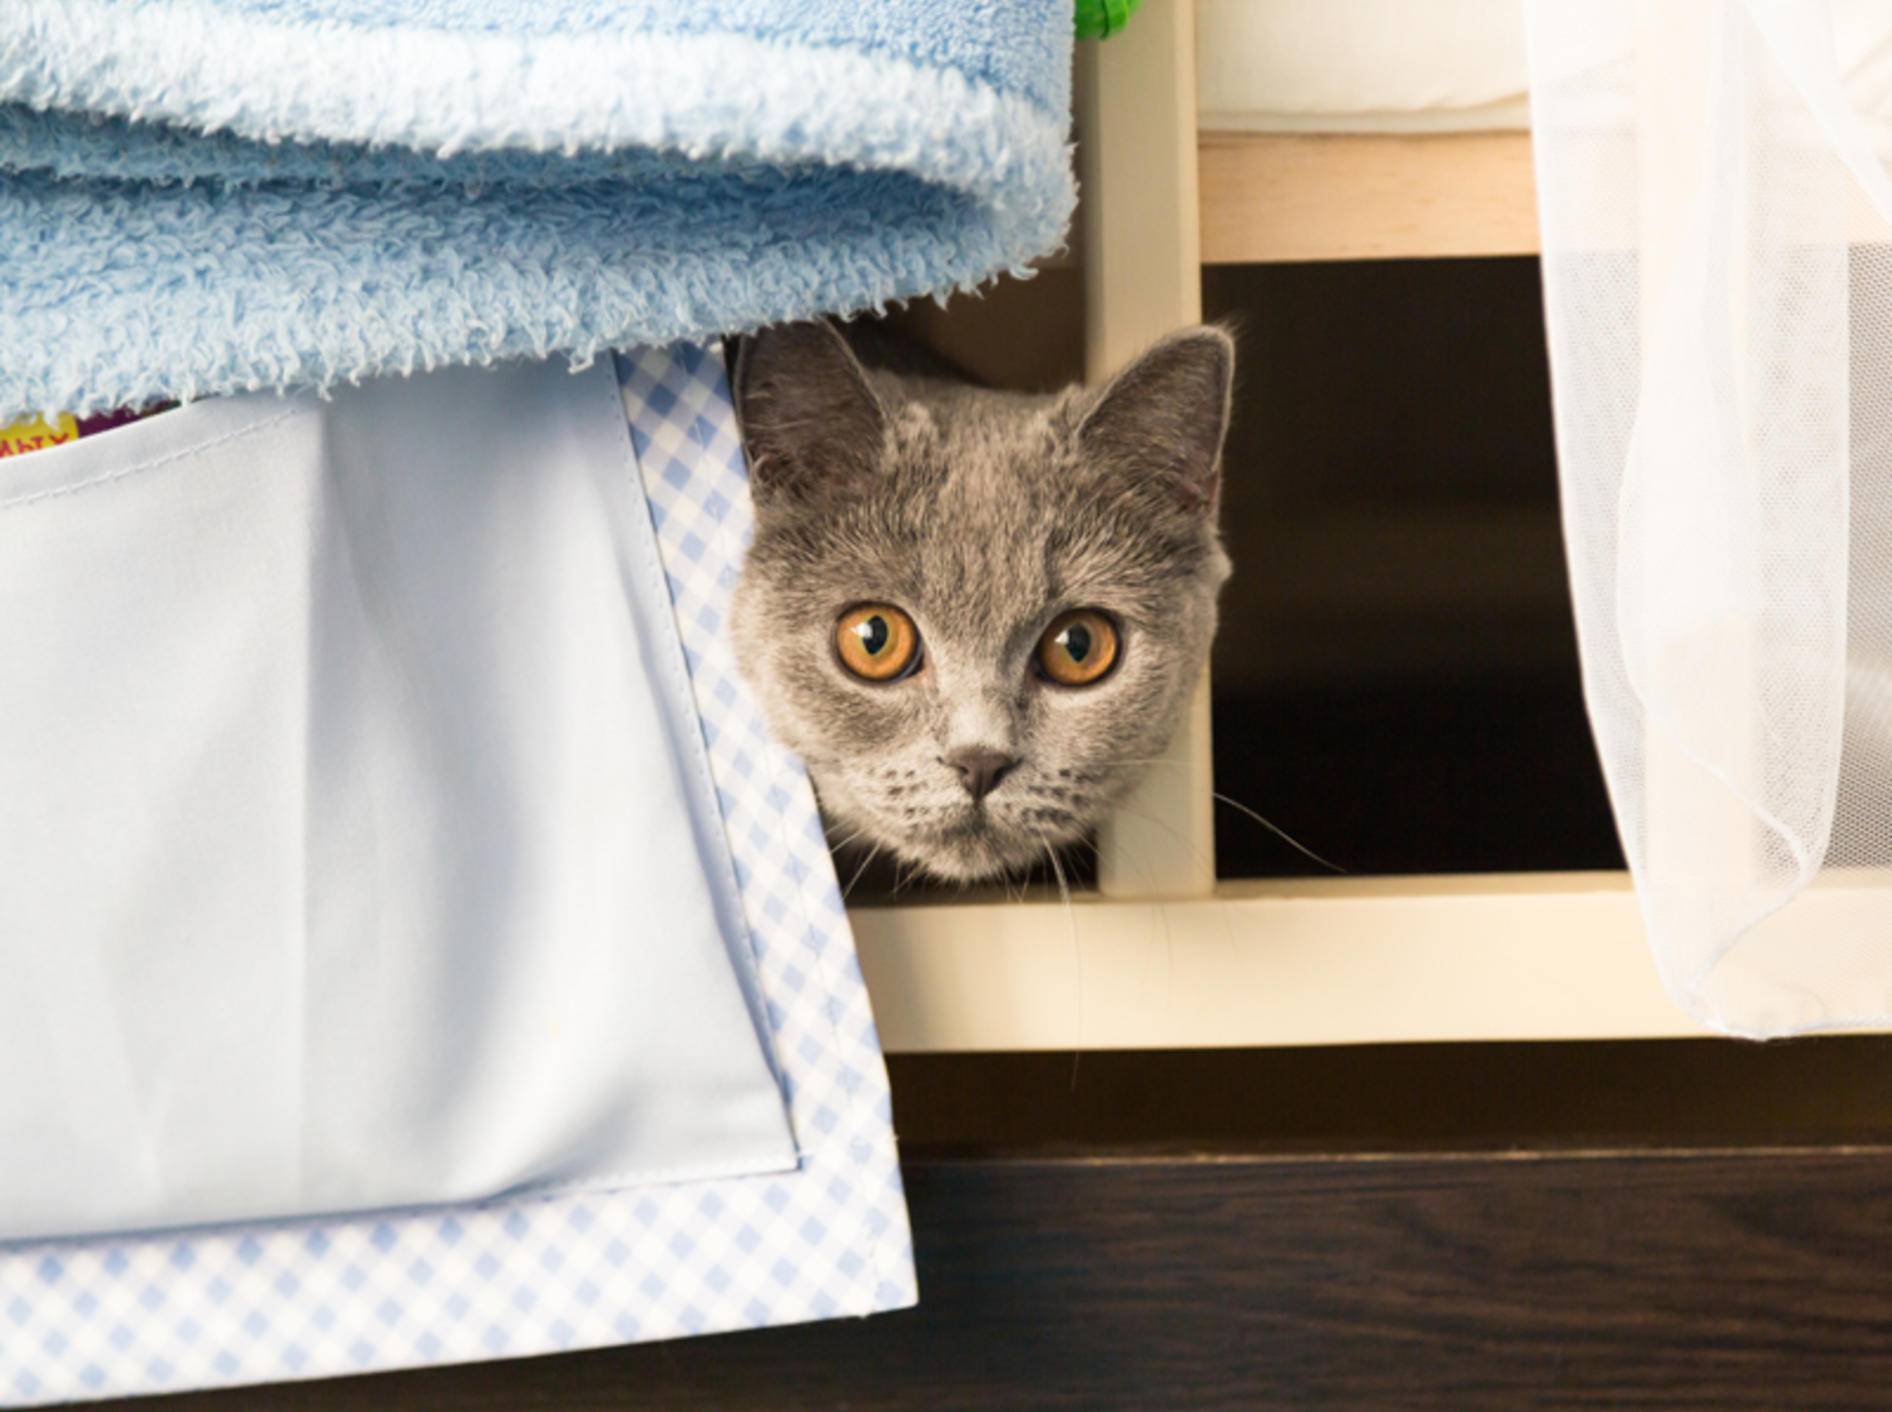 "Hilfe! Besuch! Schnell verstecken", scheint diese schüchterne Katze zu denken – Shutterstock / katfox.art